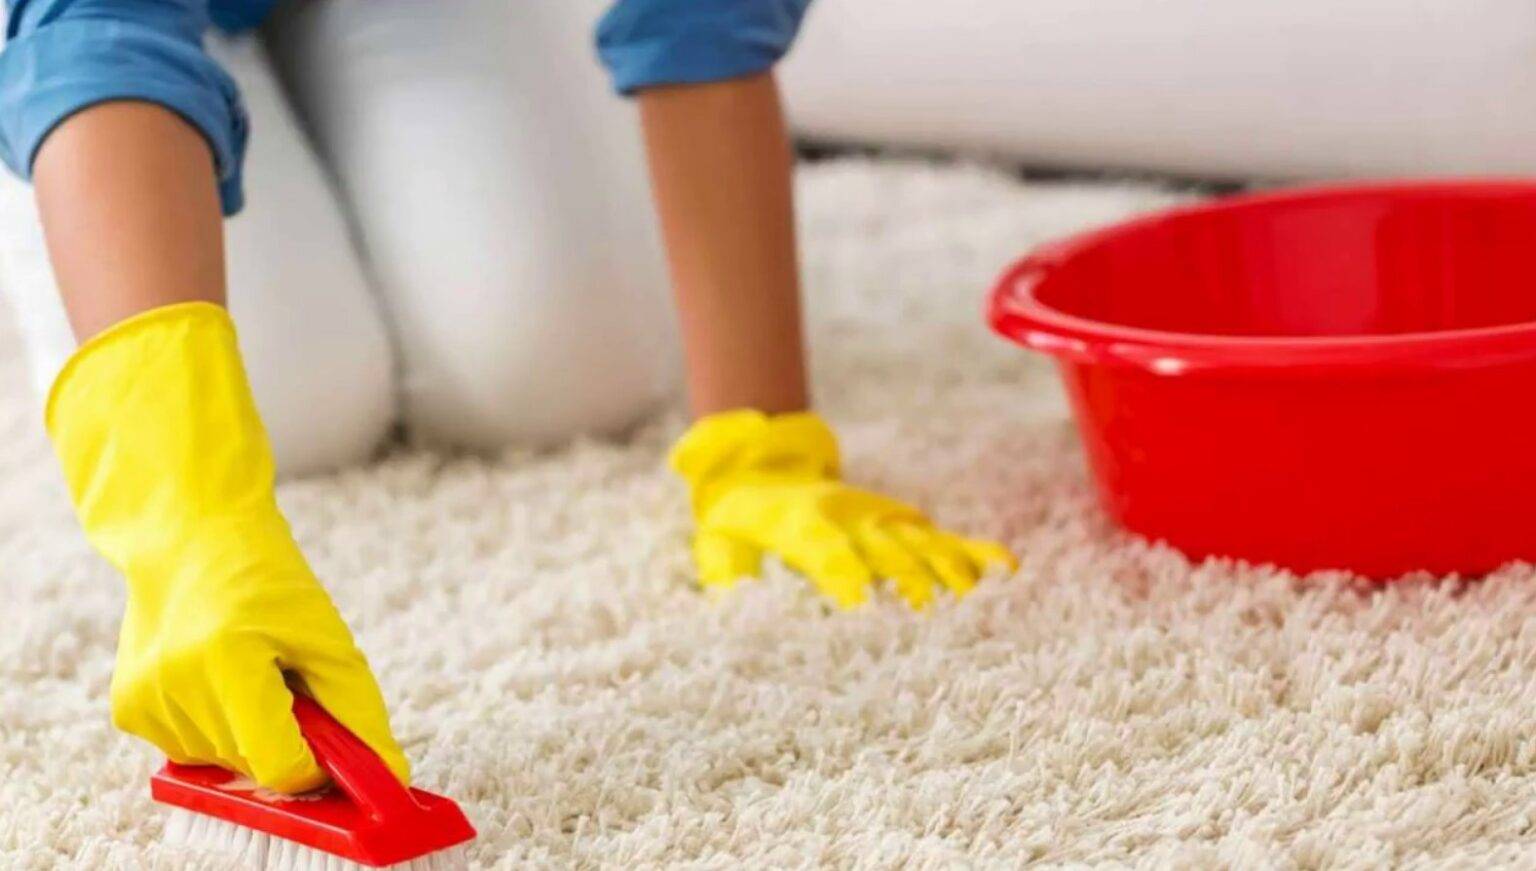 Как почистить палас в домашних условиях быстро и эффективно: не снимая с пола, избавиться от запаха, чем отмыть светлый и темный ковер?